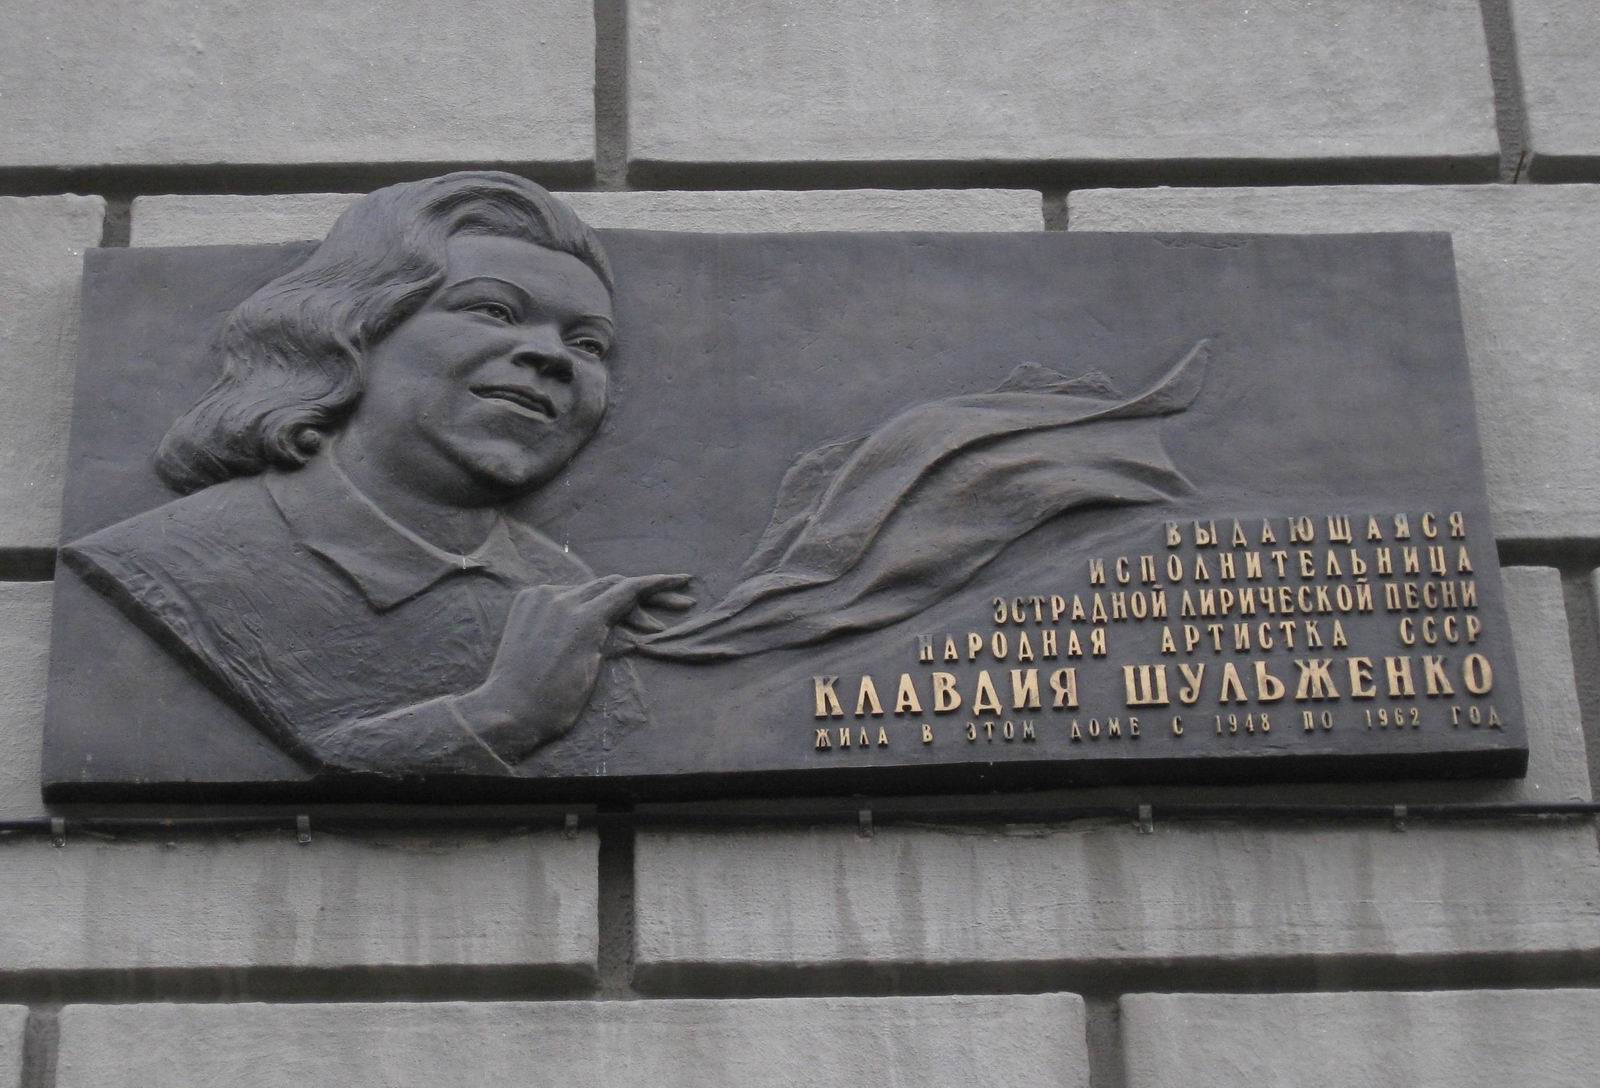 Мемориальная доска Шульженко К.И. (1906–1984), ск. А.А.Бичуков, на улице Спиридоновка, дом 22/2, открыта 19.5.2006.